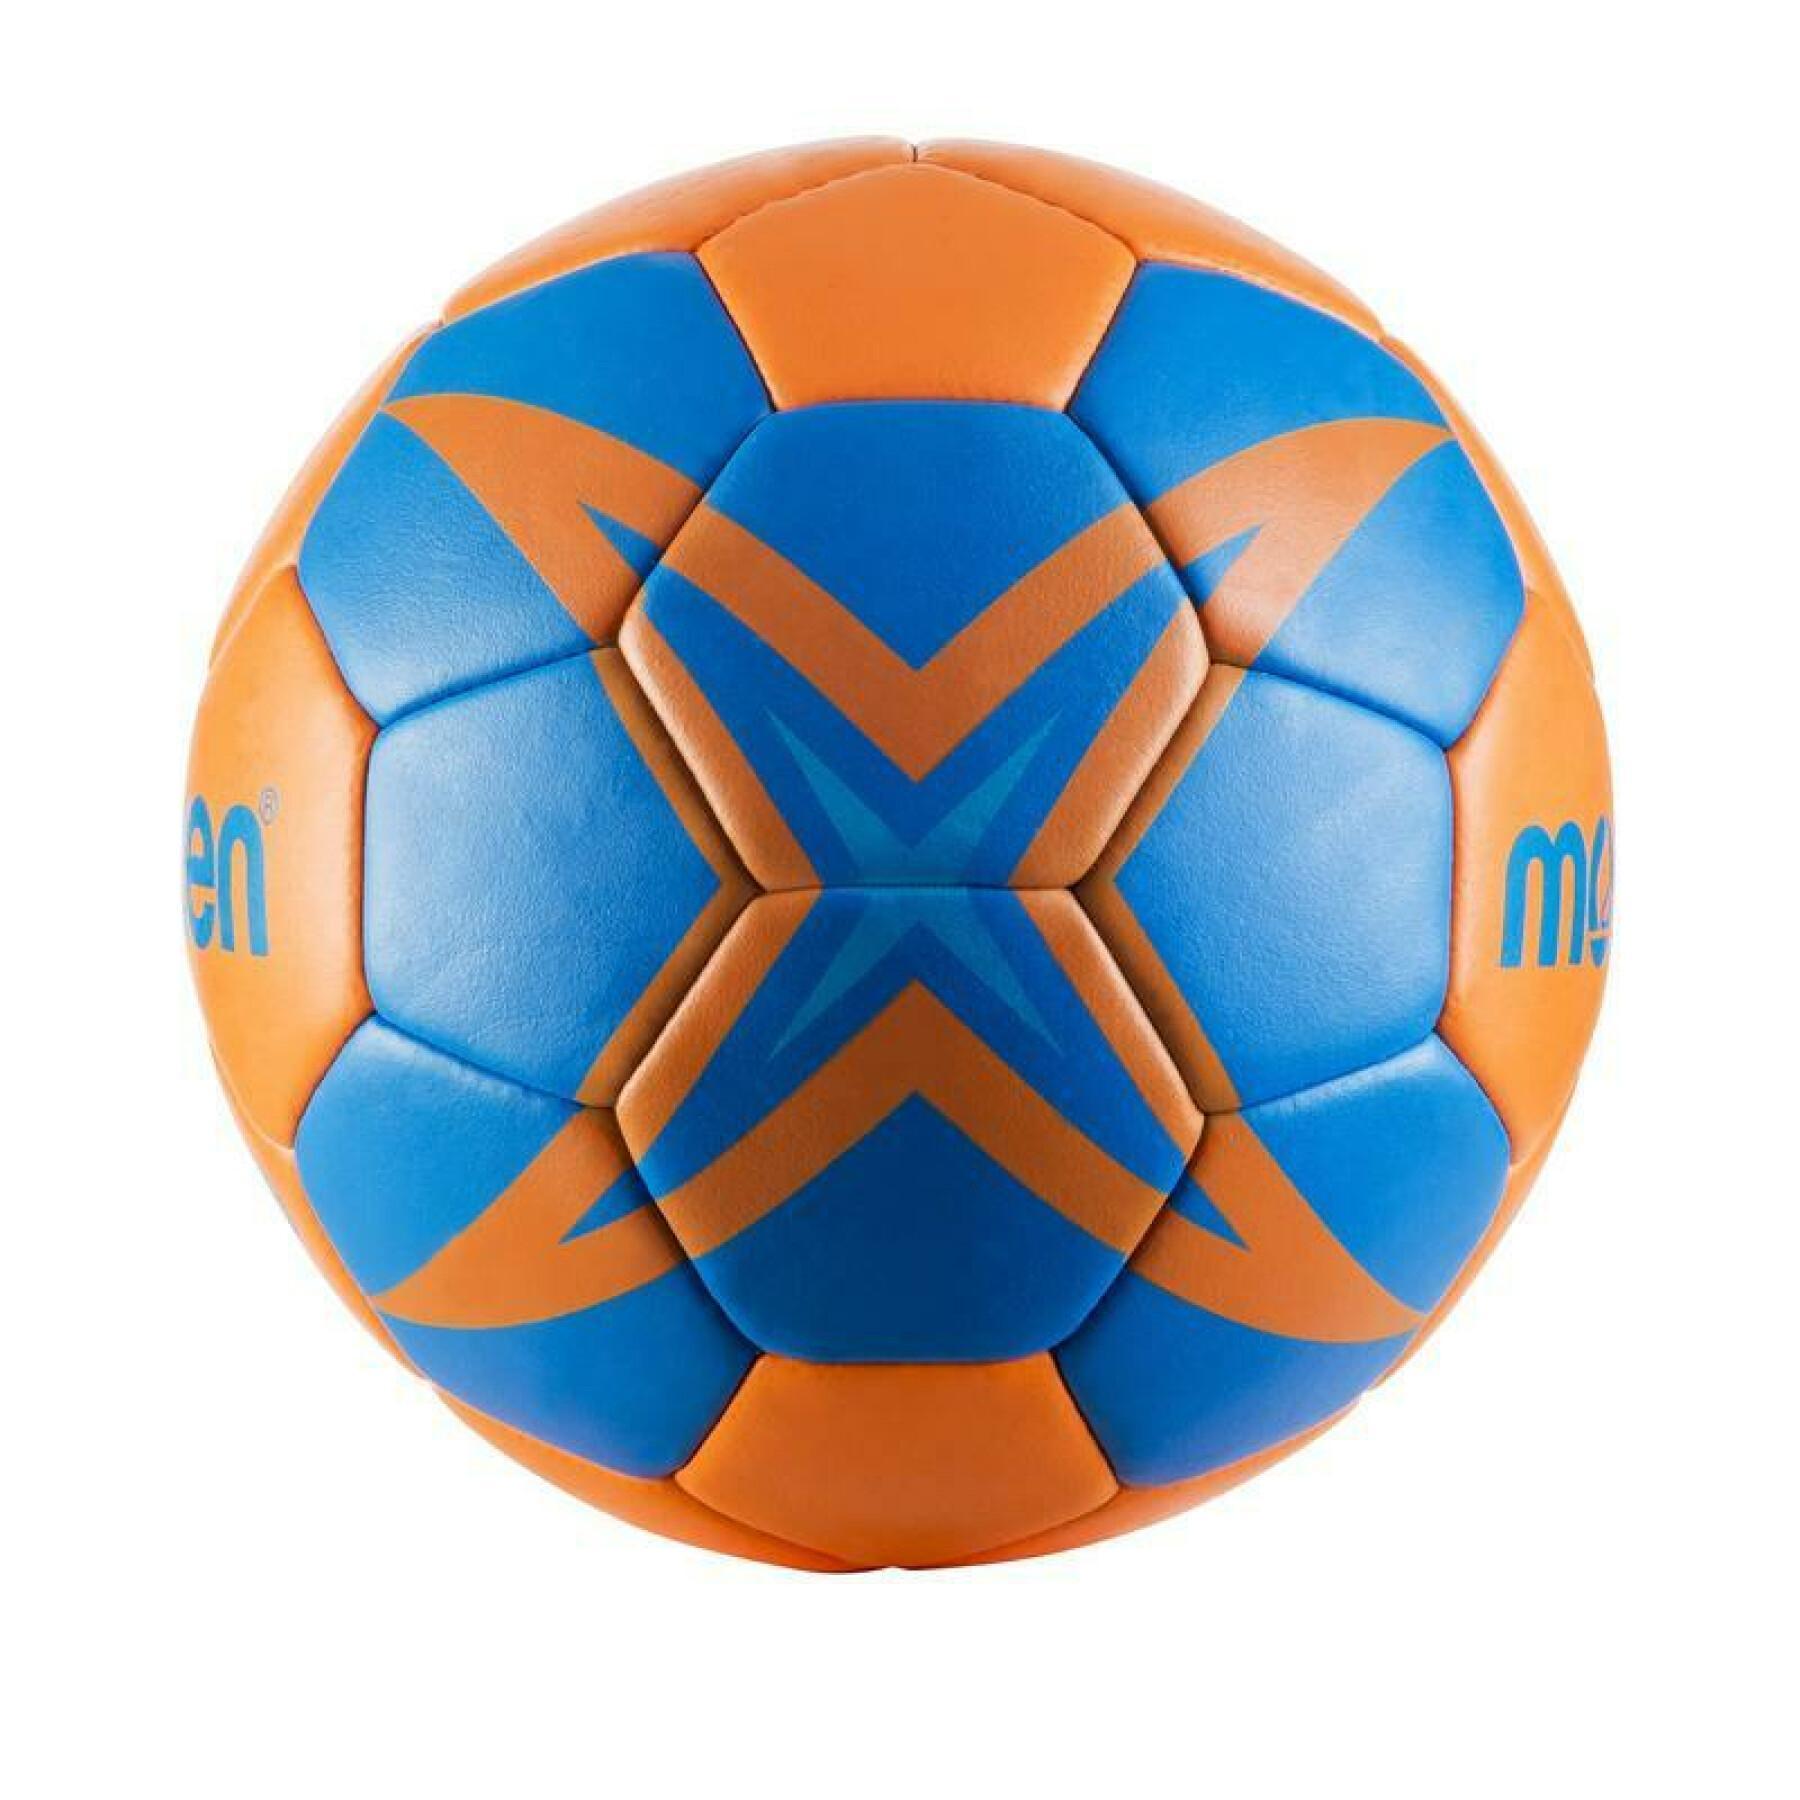 Trainingsball Molten HX1800 taille 0